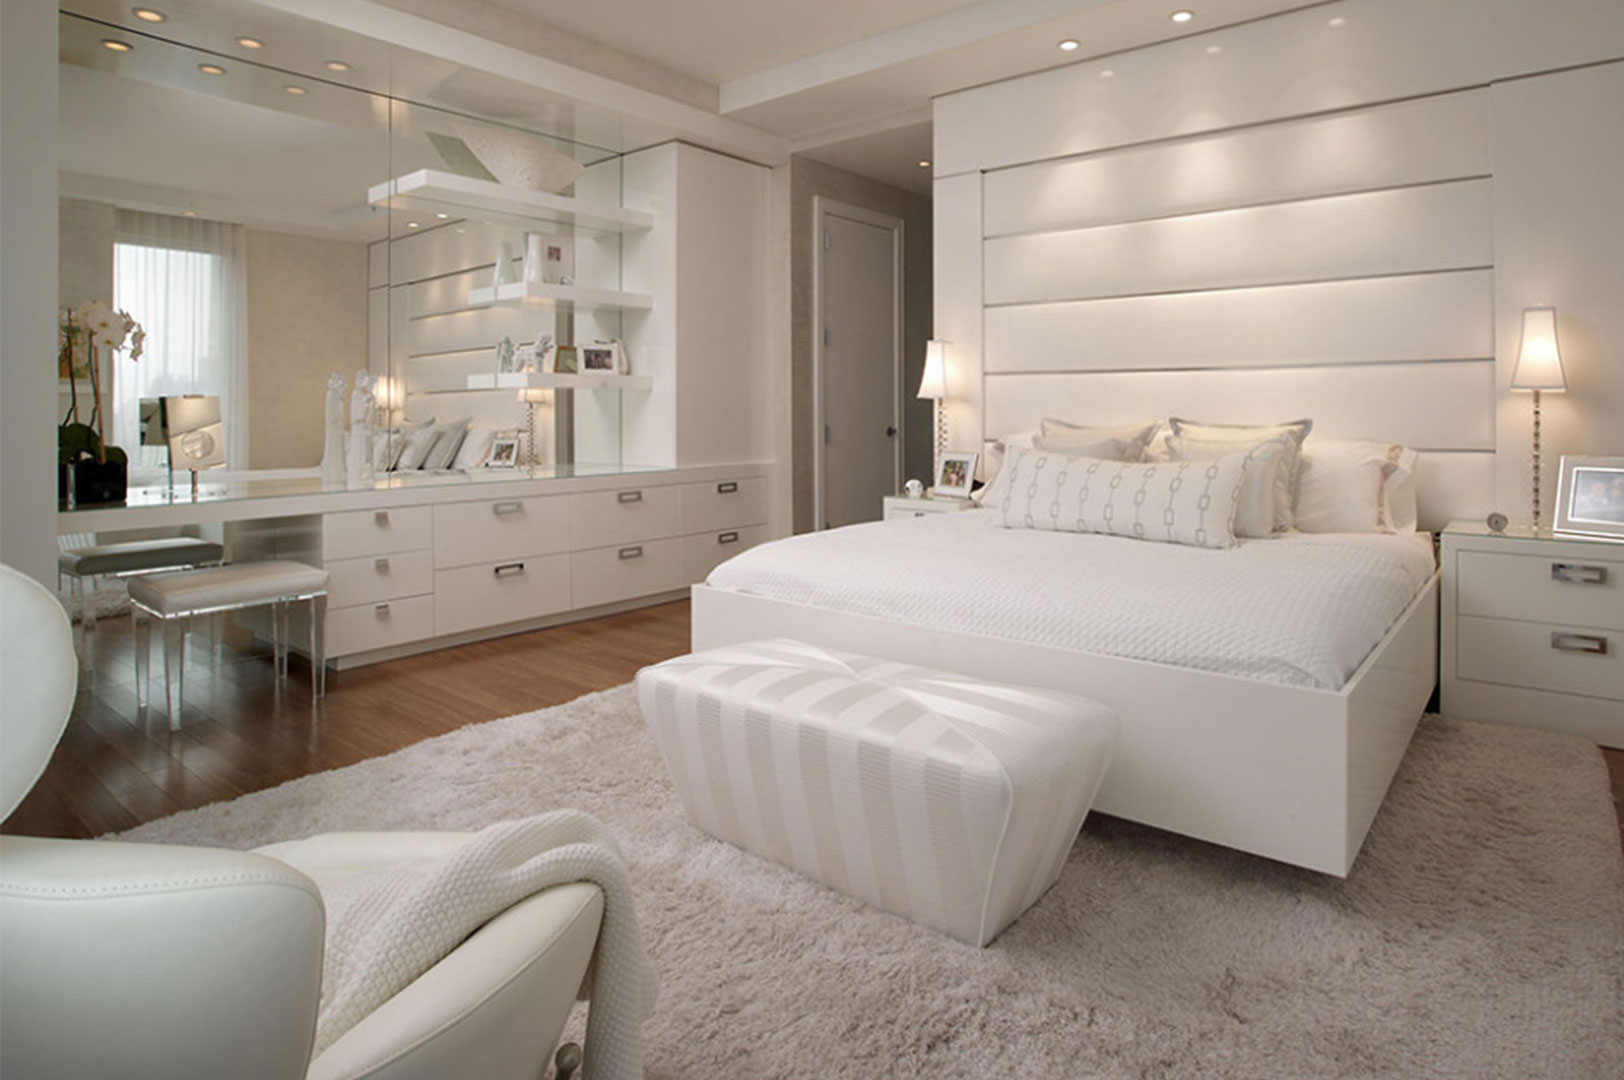 Mobili bianchi moderni per la camera da letto glamour